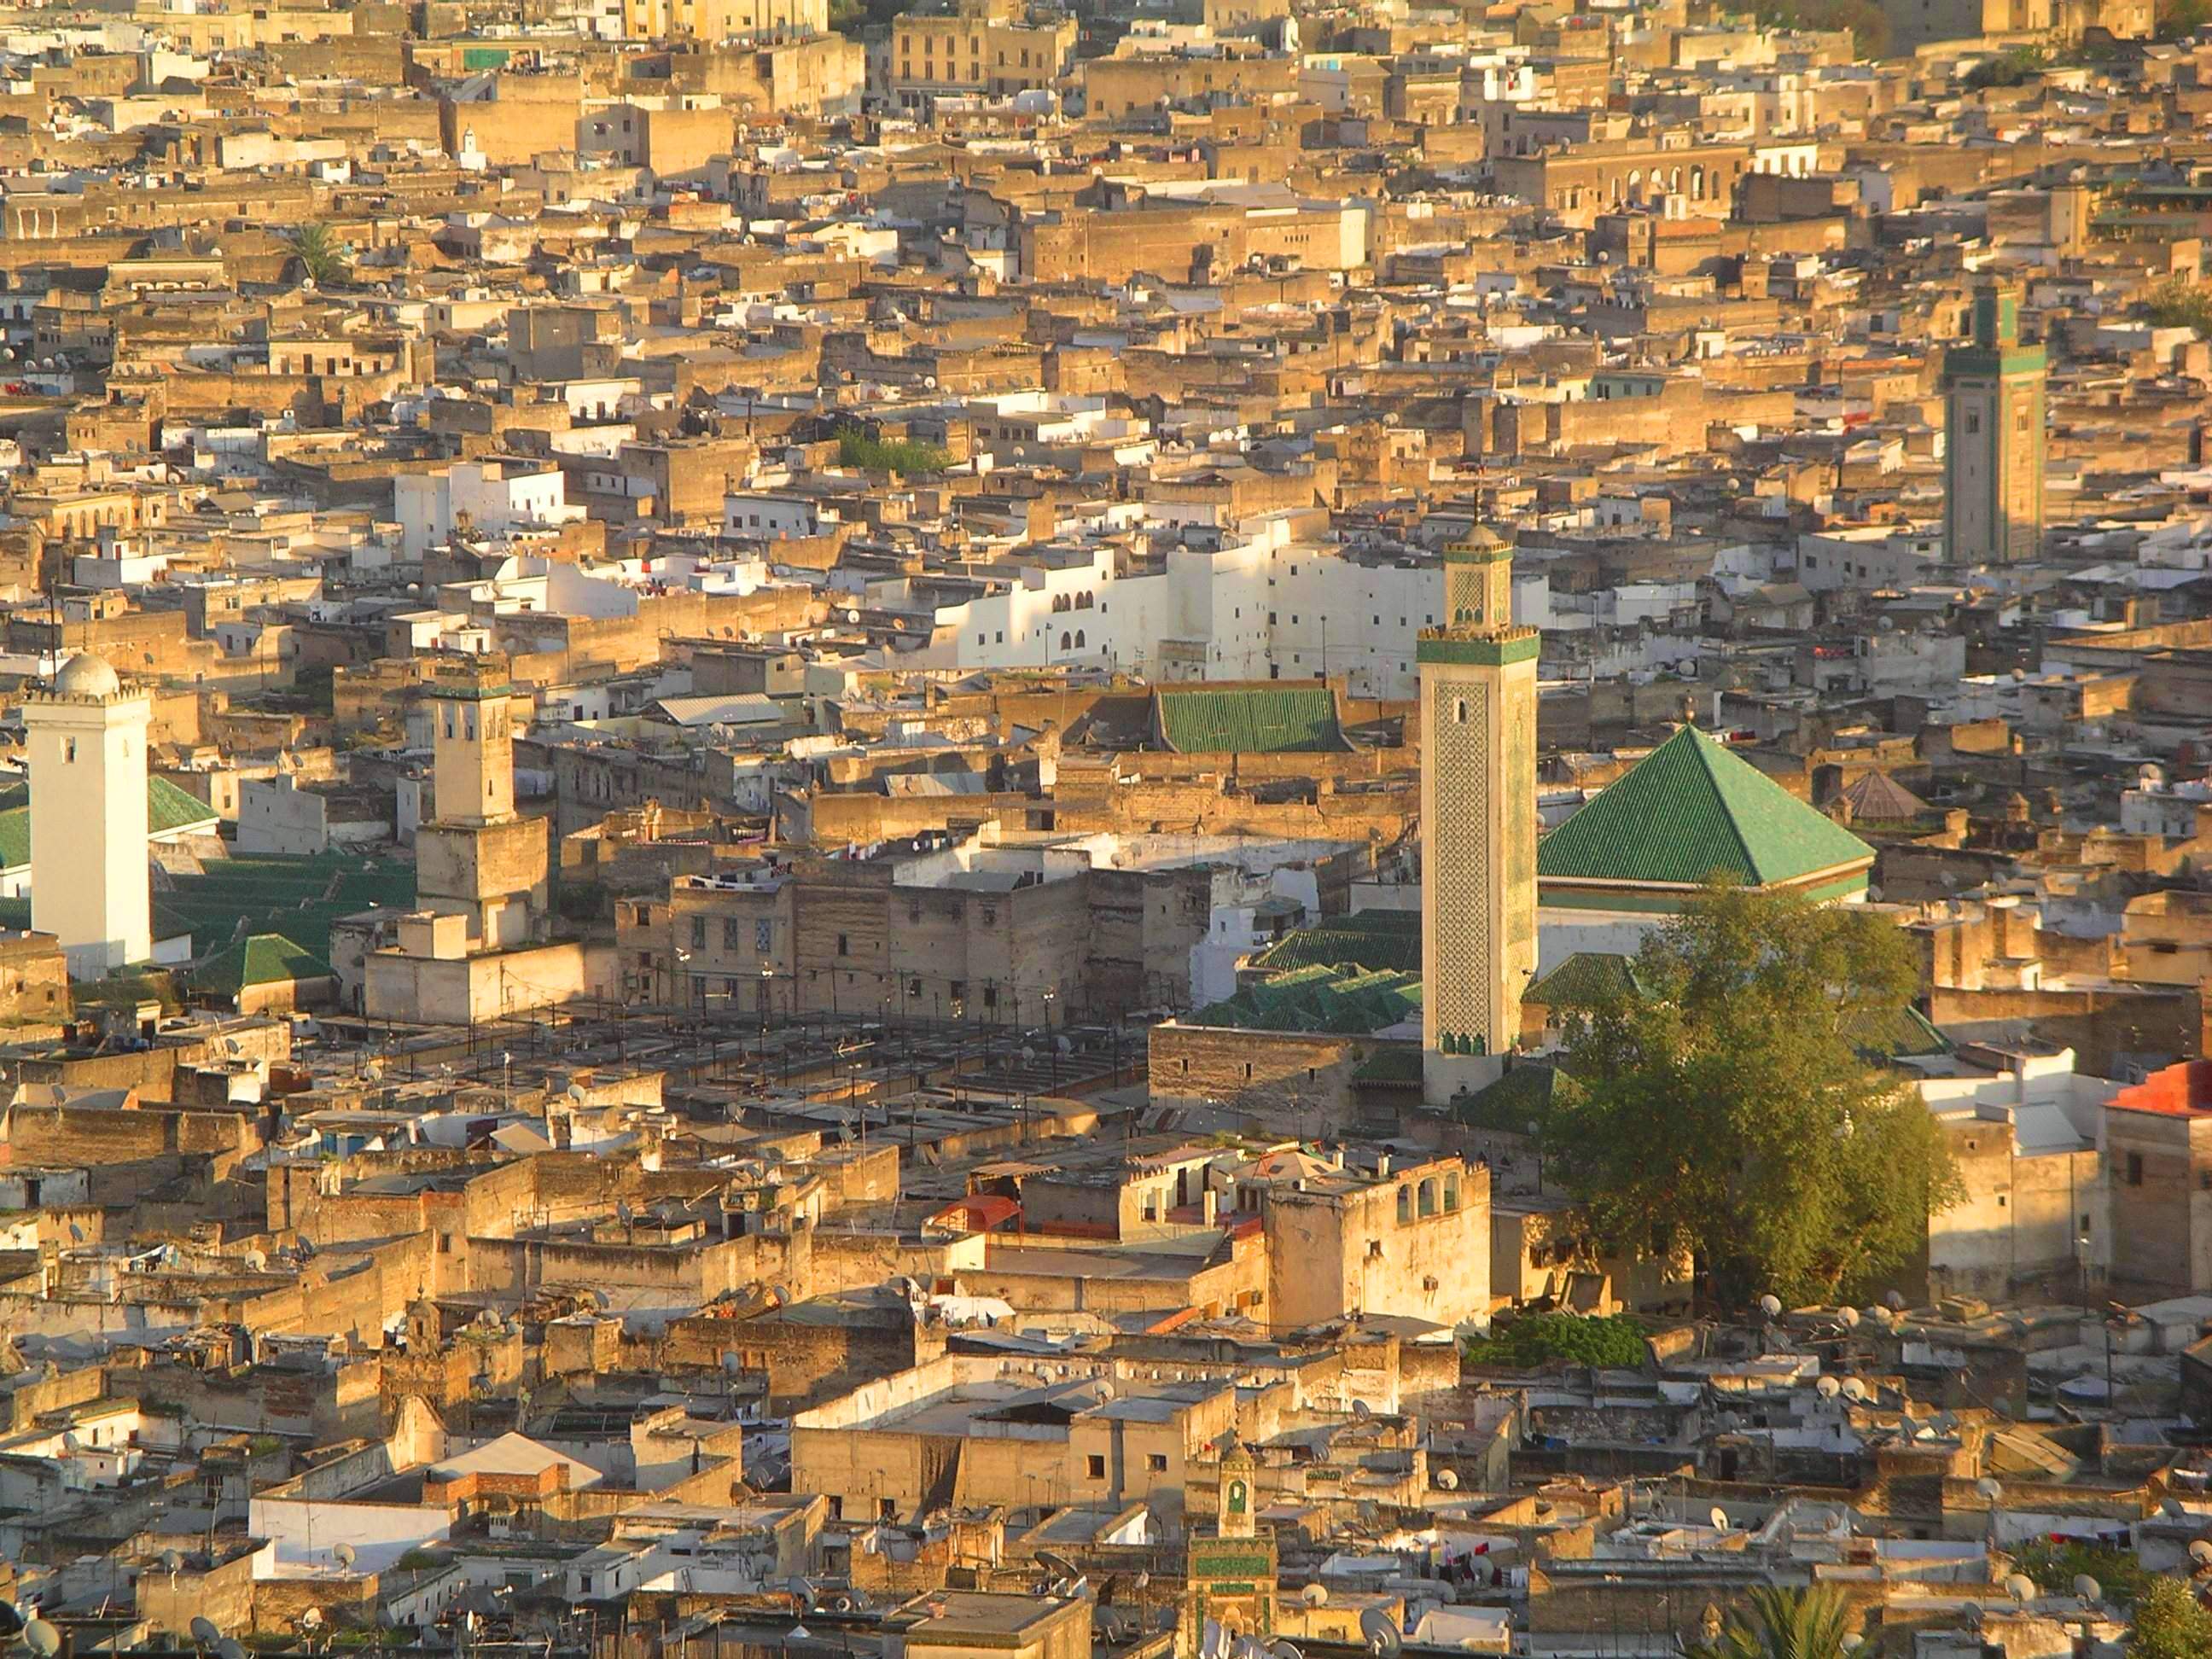 Fez Region